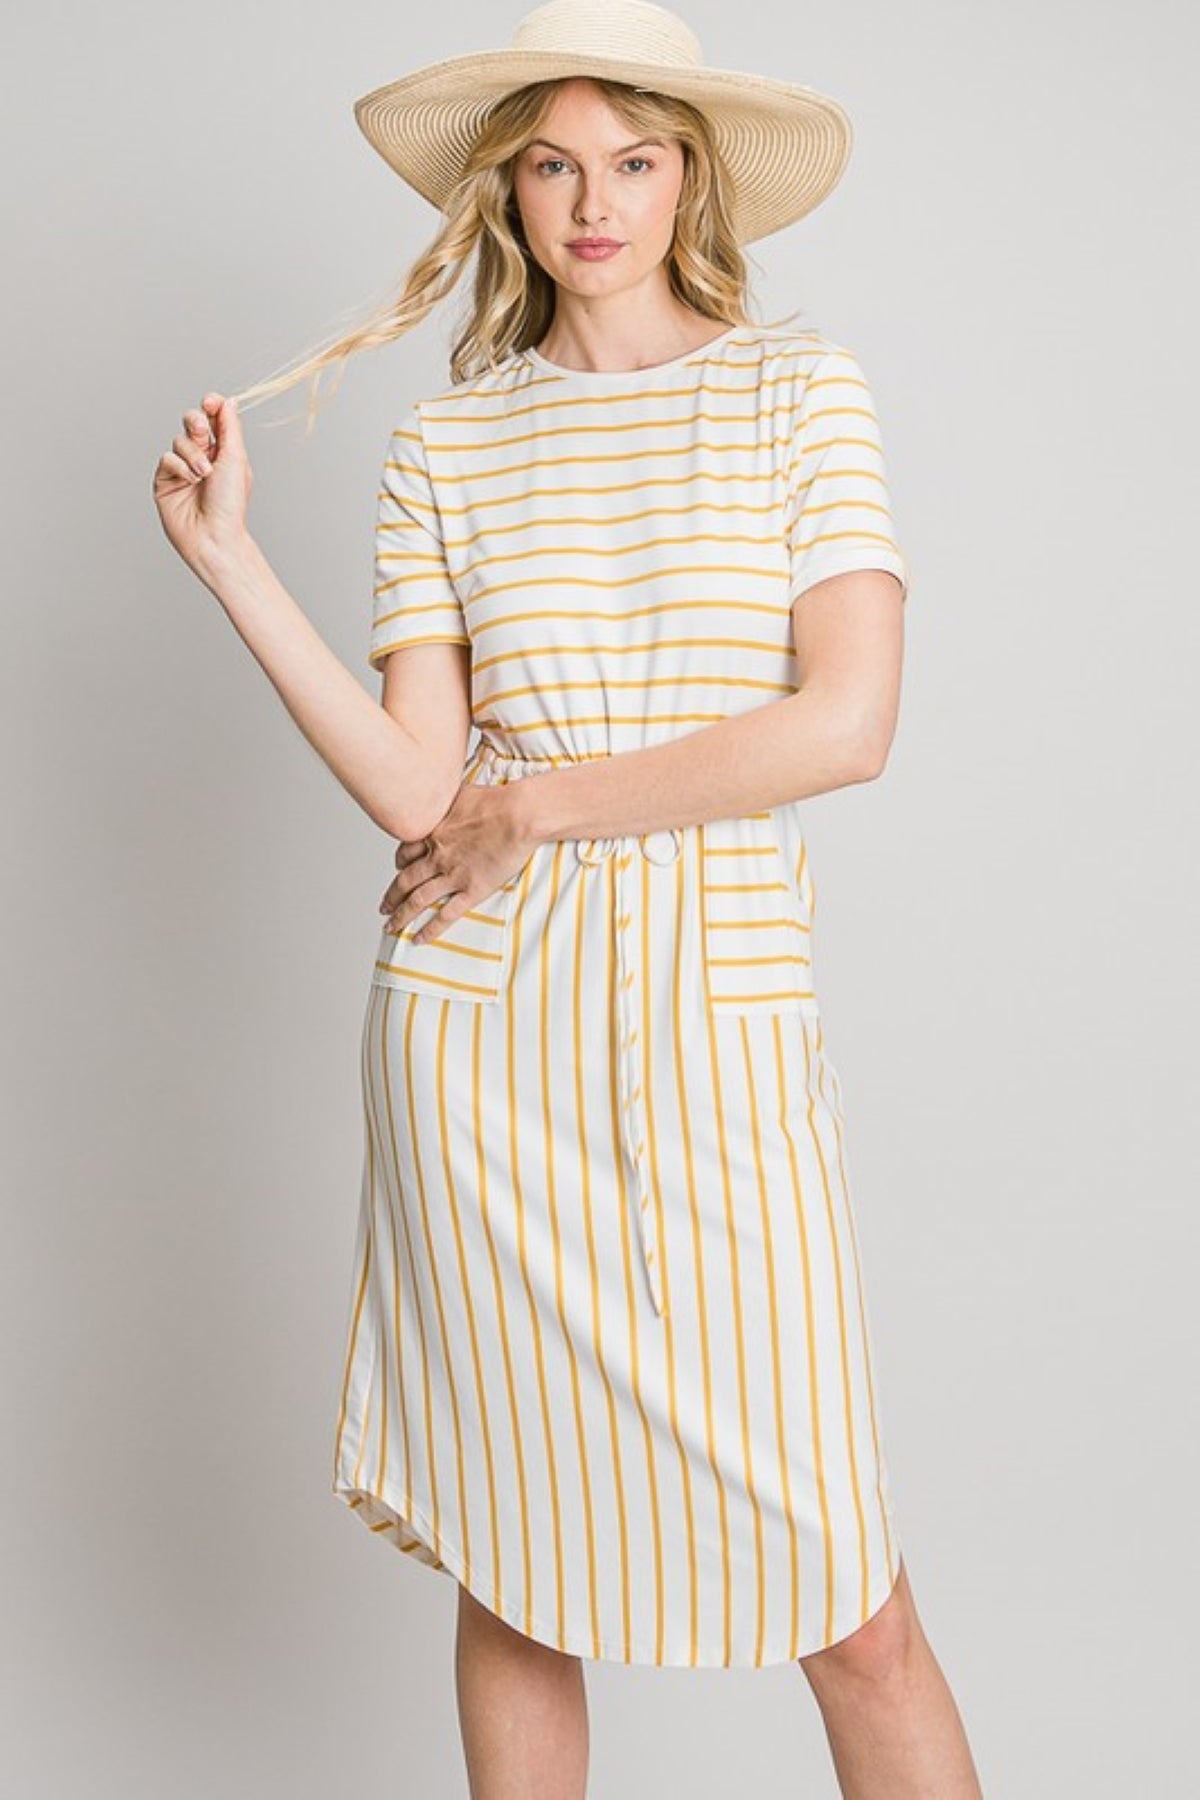 Tammie Striped Midi Dress in Mustard